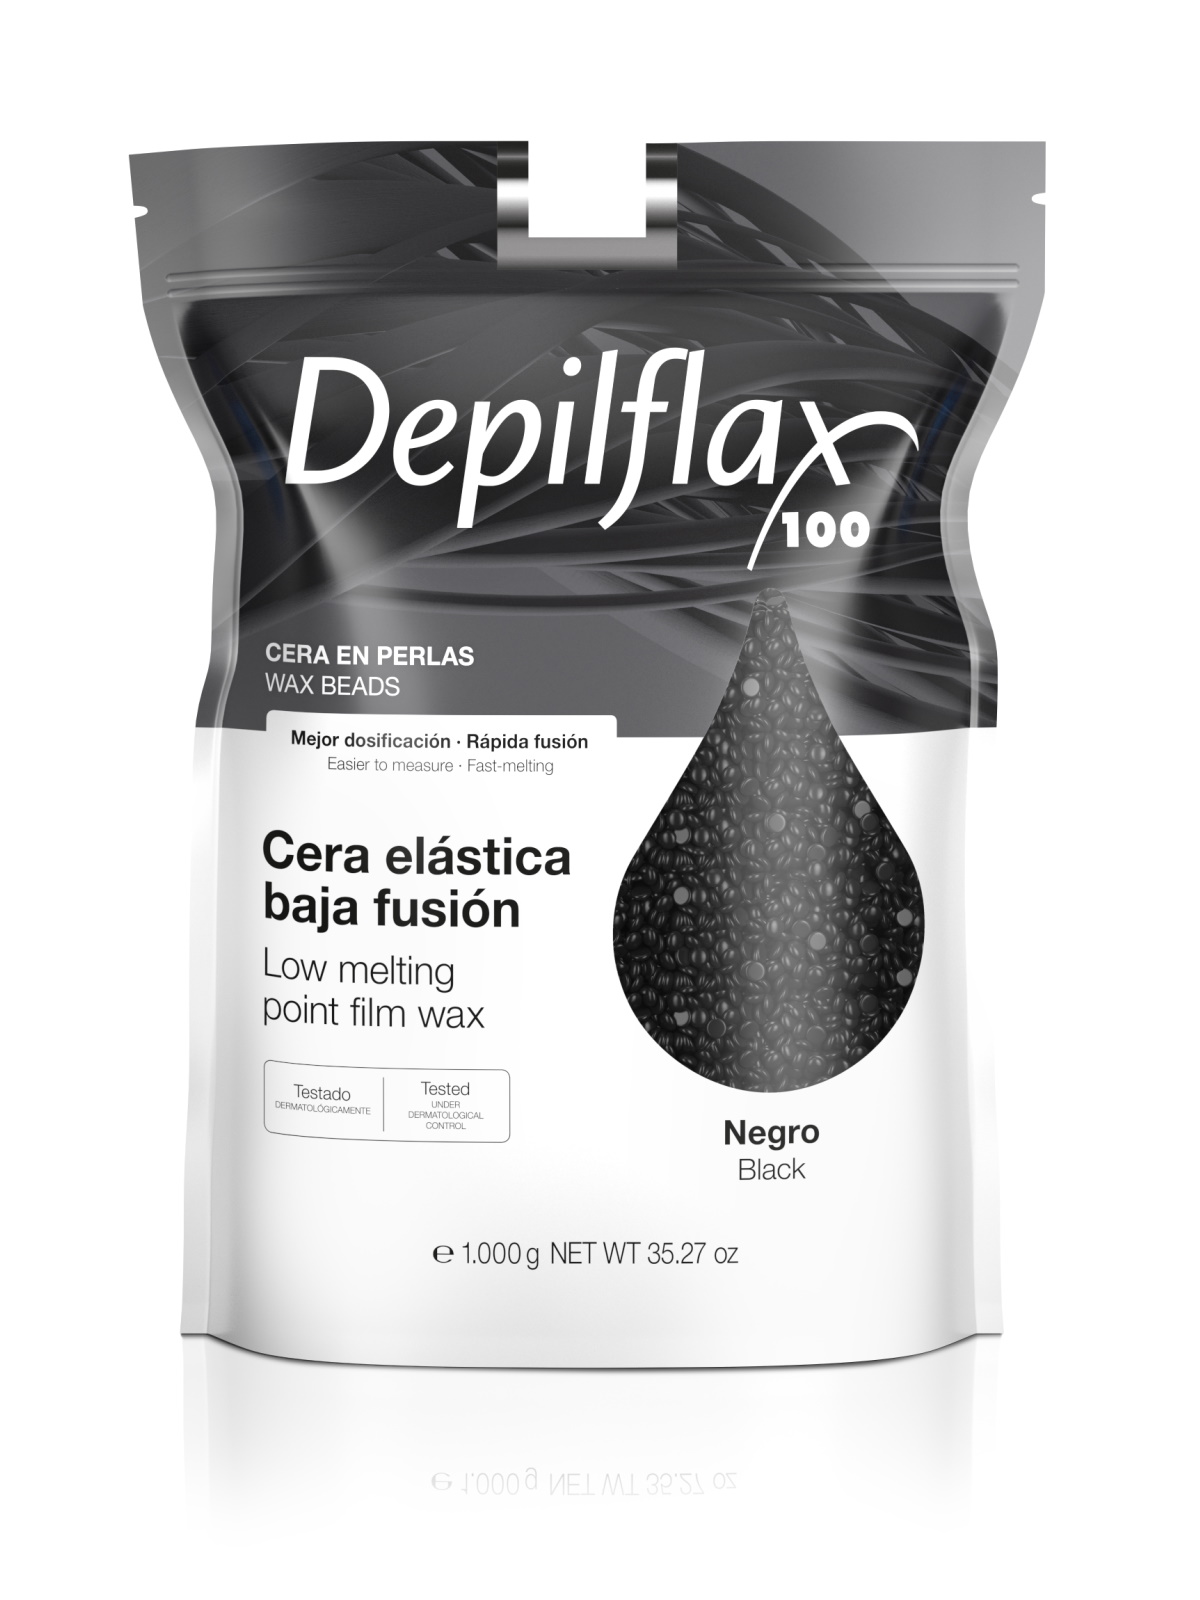 Воск для депиляции Depilflax Черный 1000 г depilflax 100 воск для депиляции в картридже лесная ягода 110 г